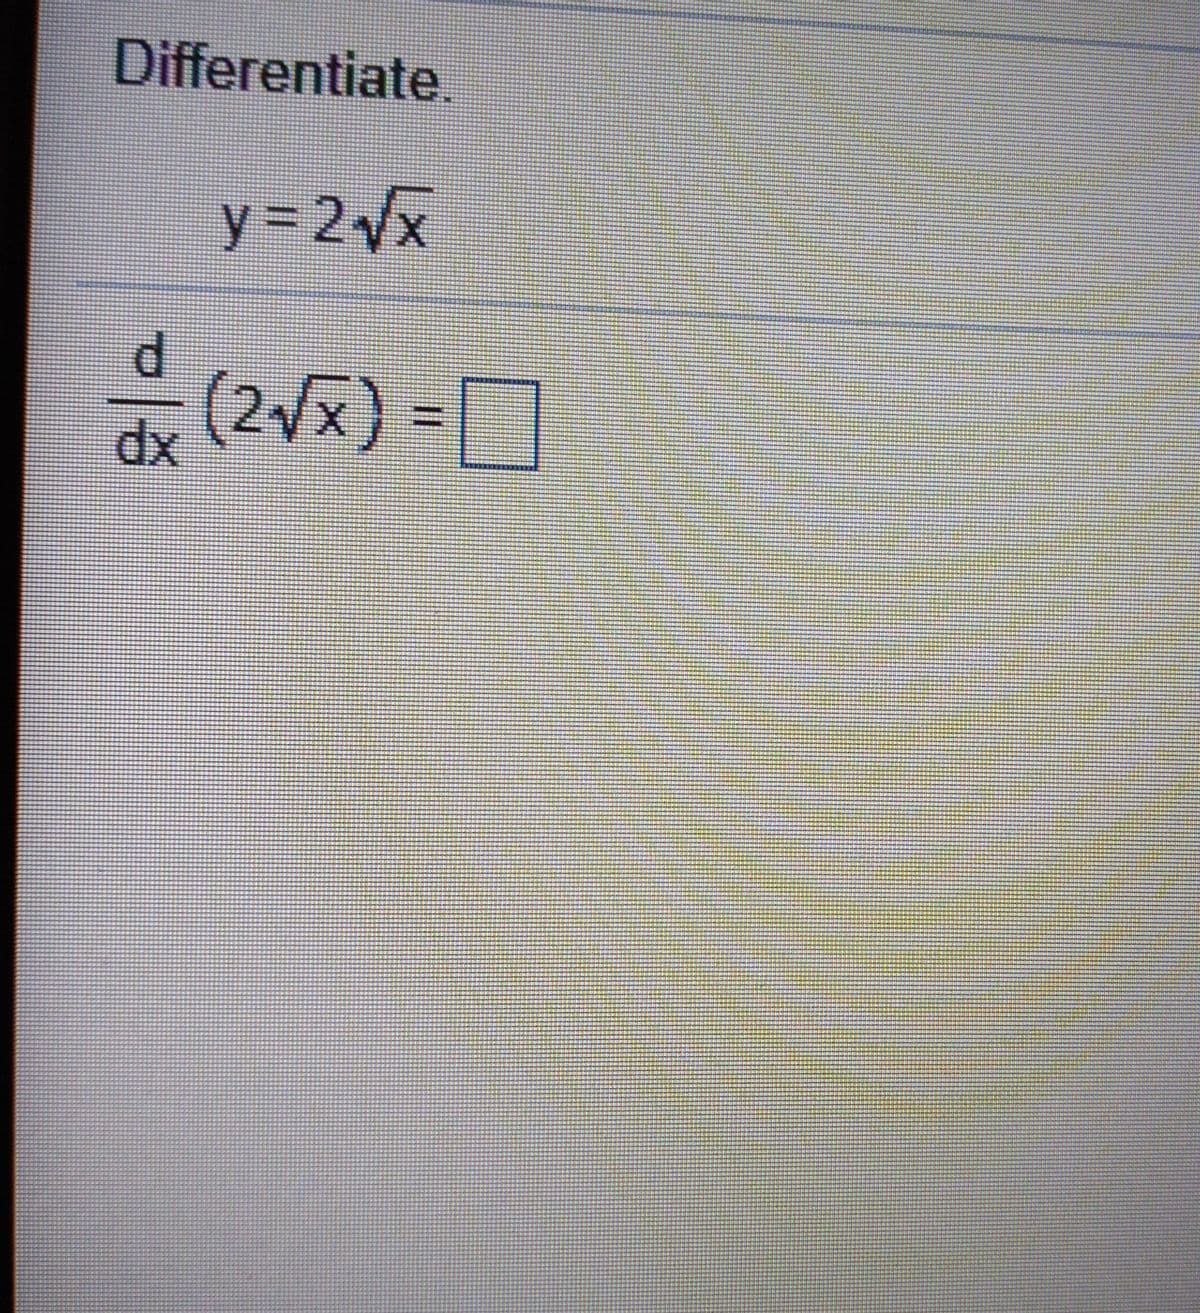 Differentiate.
y3 2Vx
P.
(2x) =D
xp
